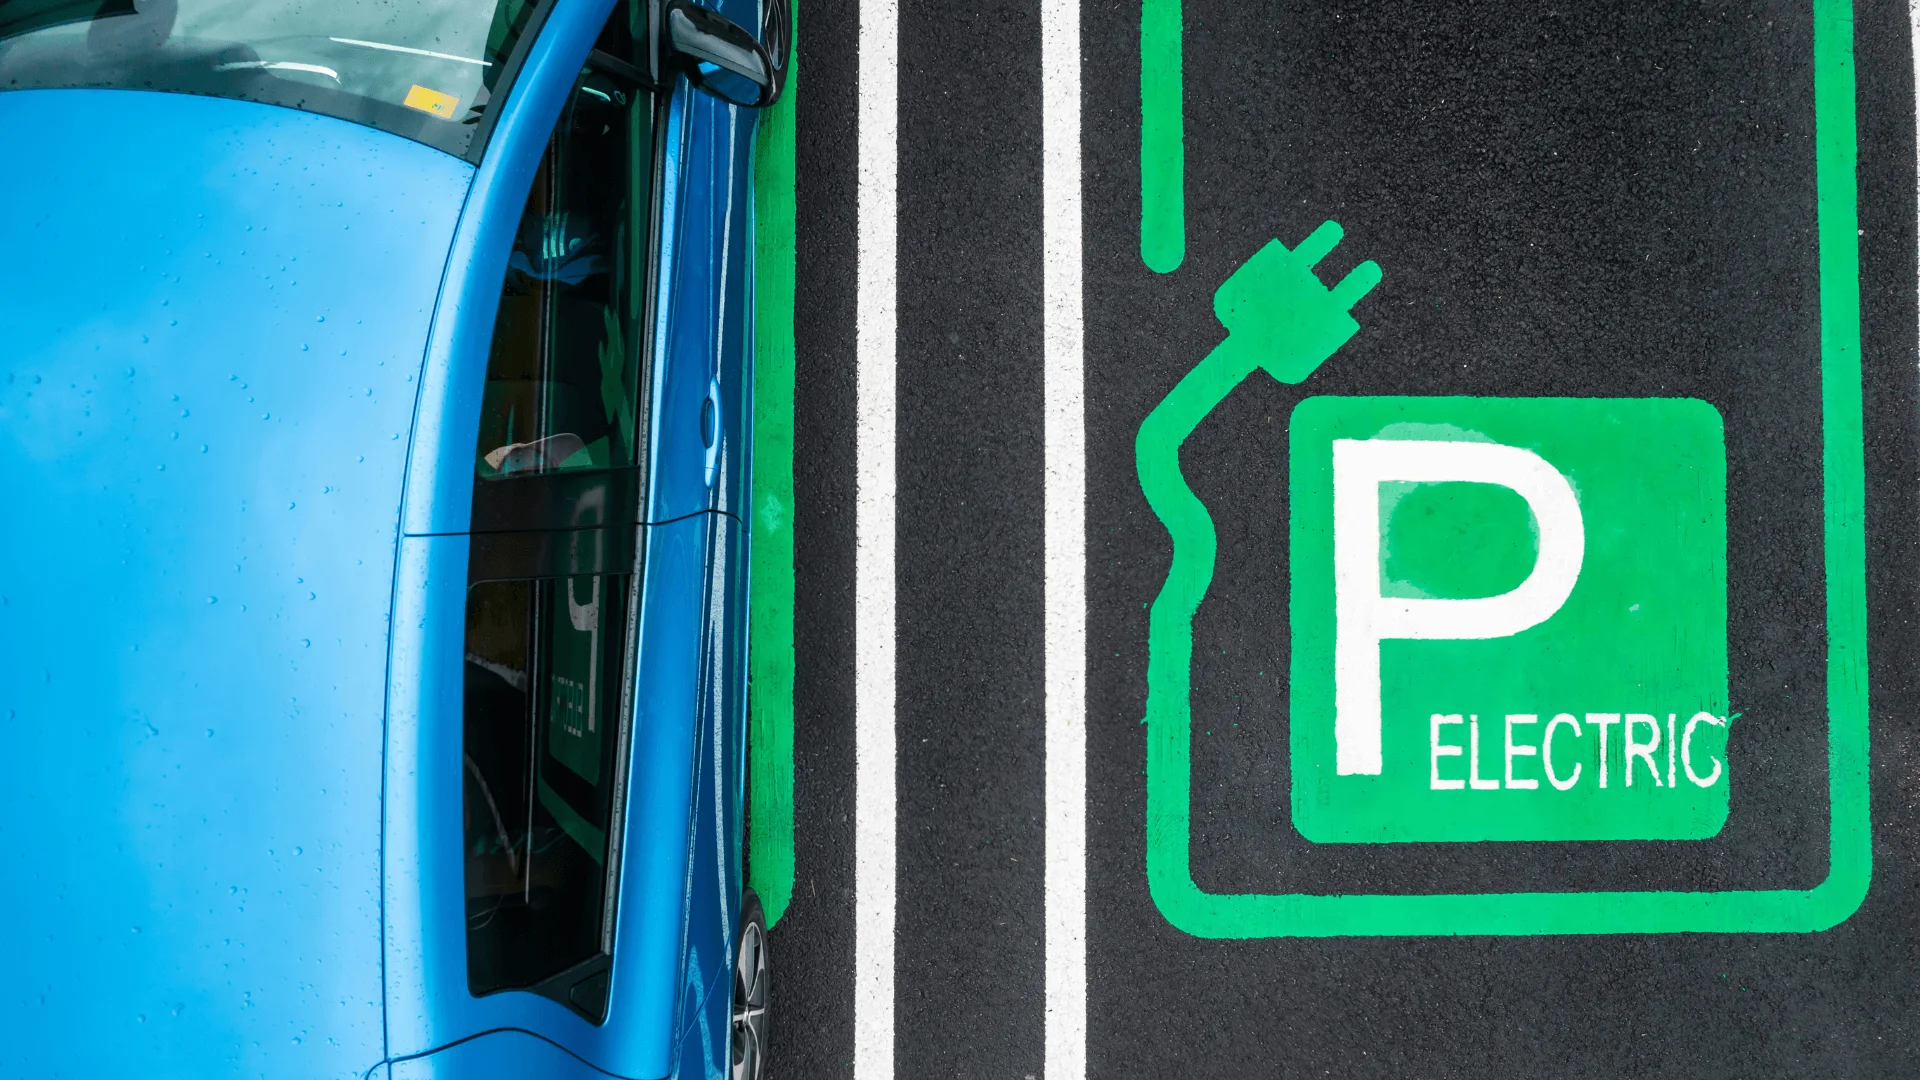 Tesla, numéro un des des véhicules électrifiés en Europe - Challenges